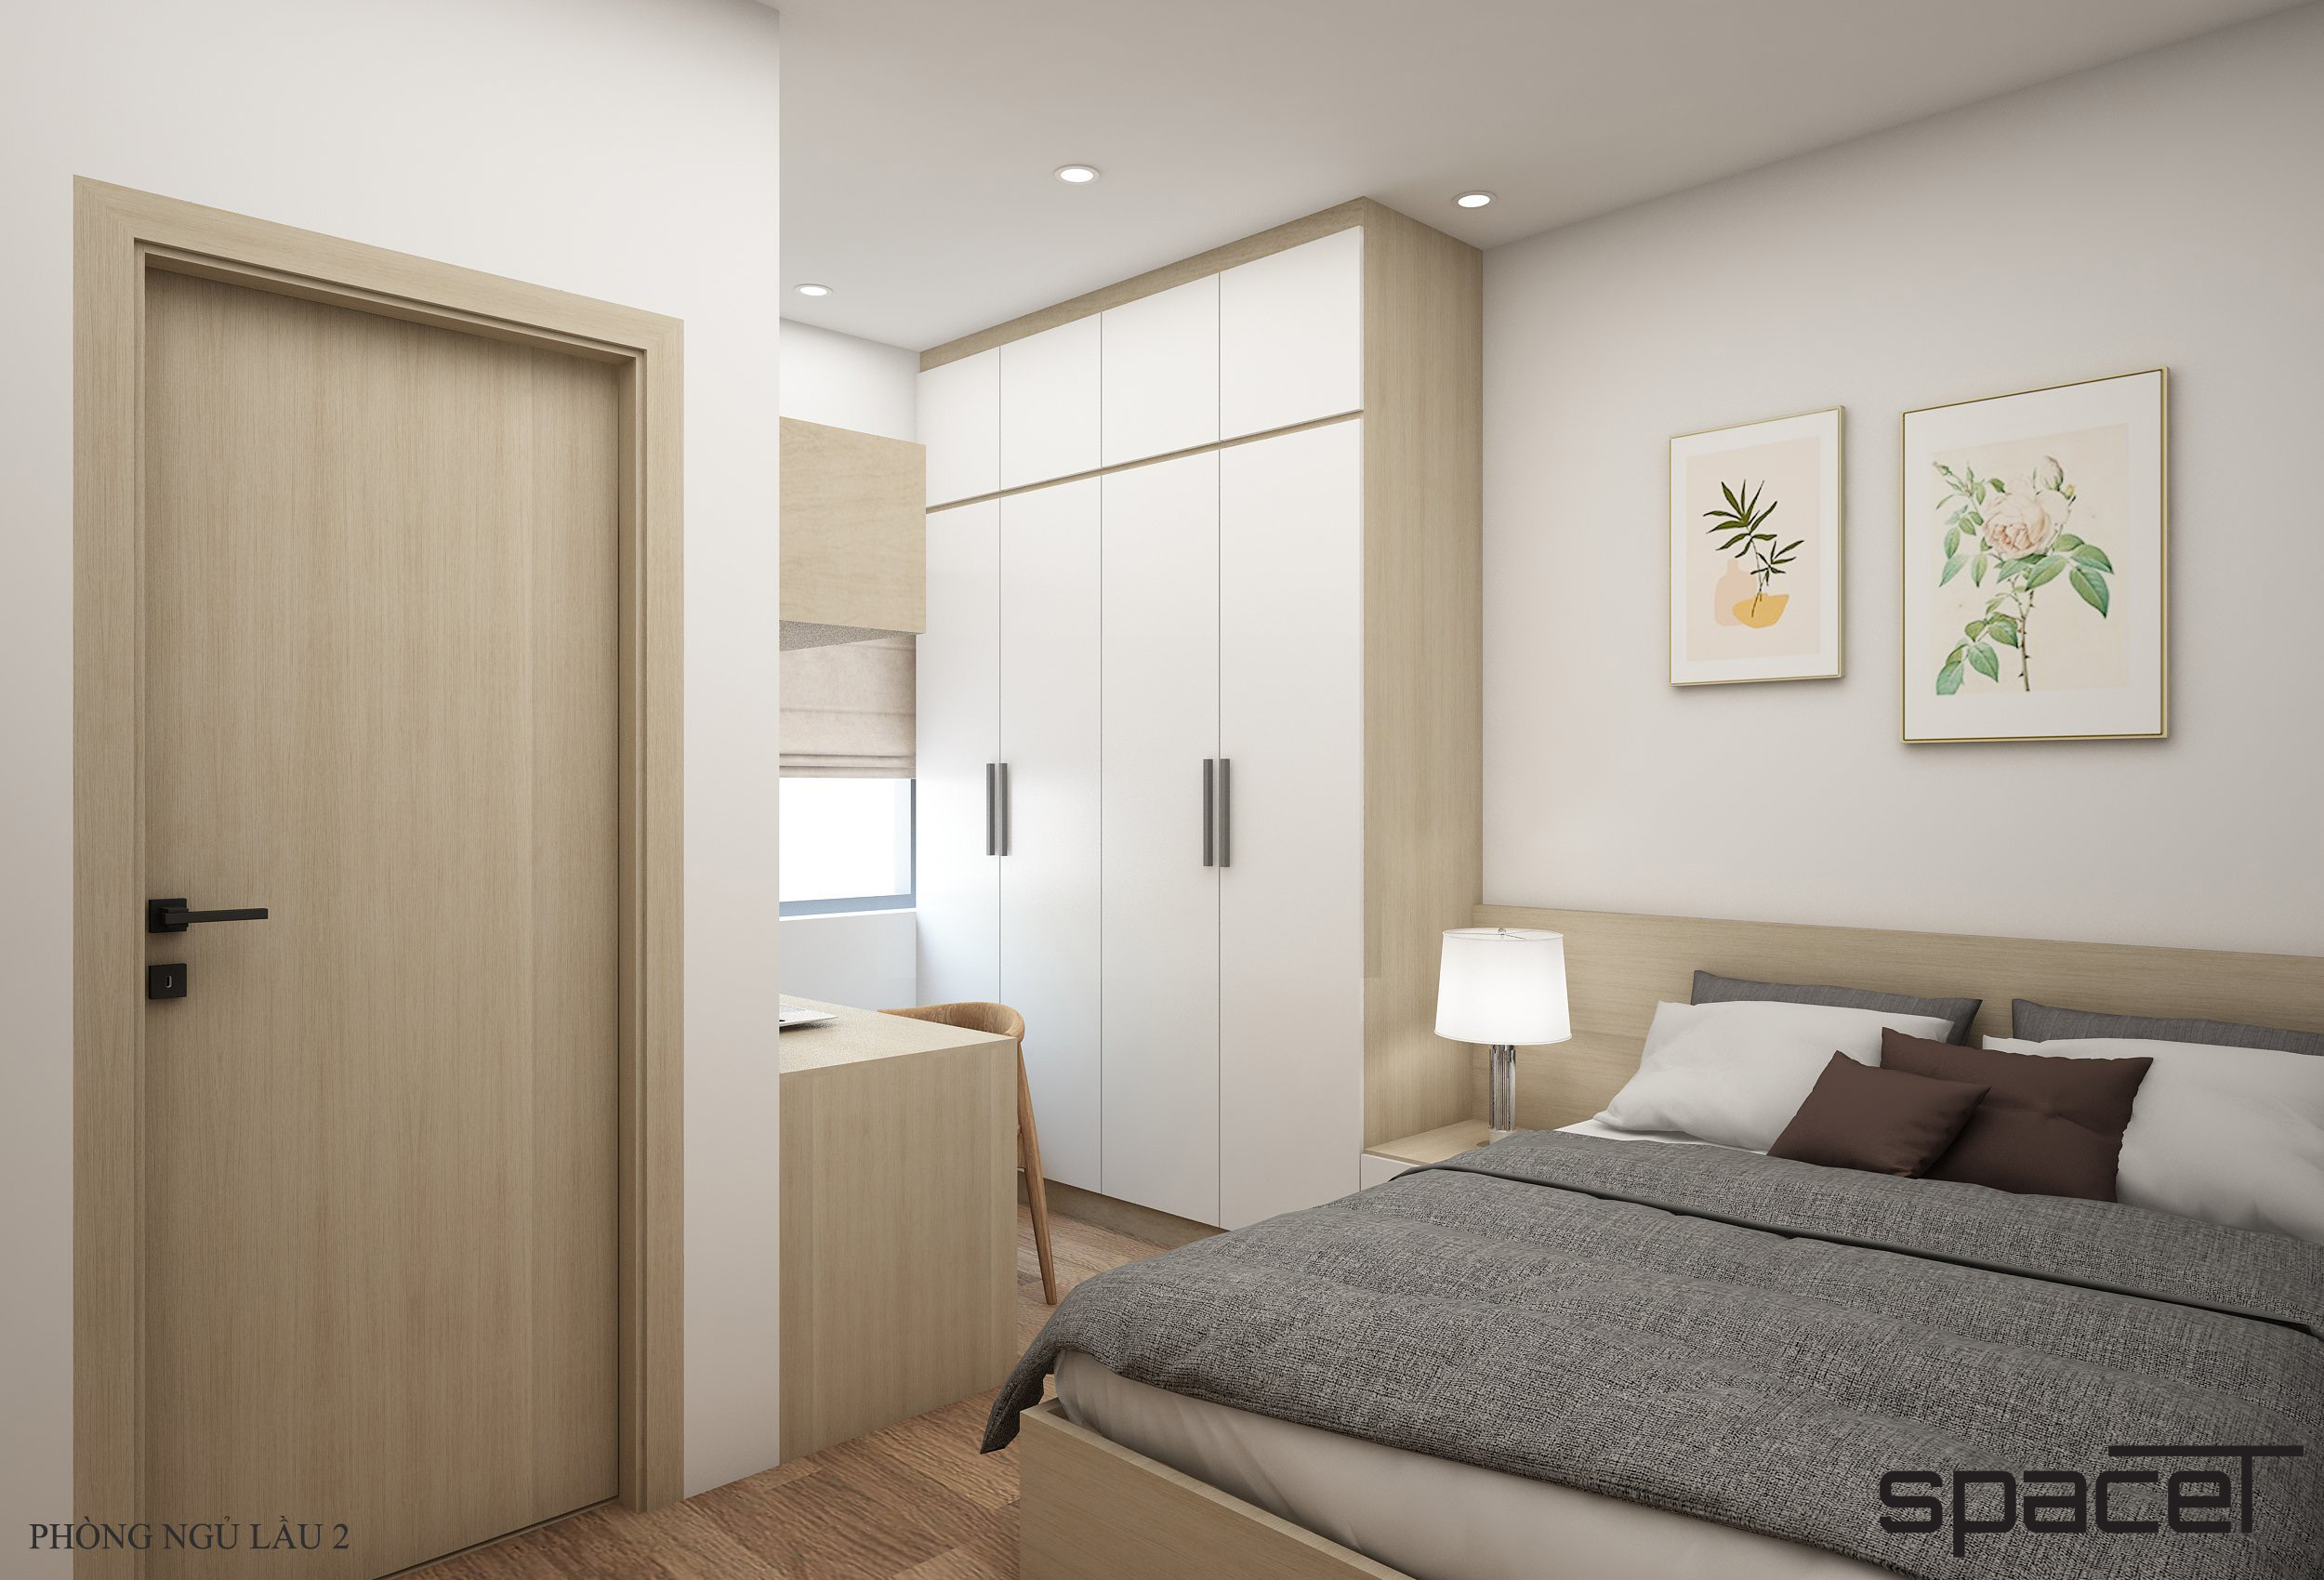 Phòng ngủ, phong cách Bắc Âu Scandinavian, thiết kế concept nội thất, nhà phố Thủ Đức